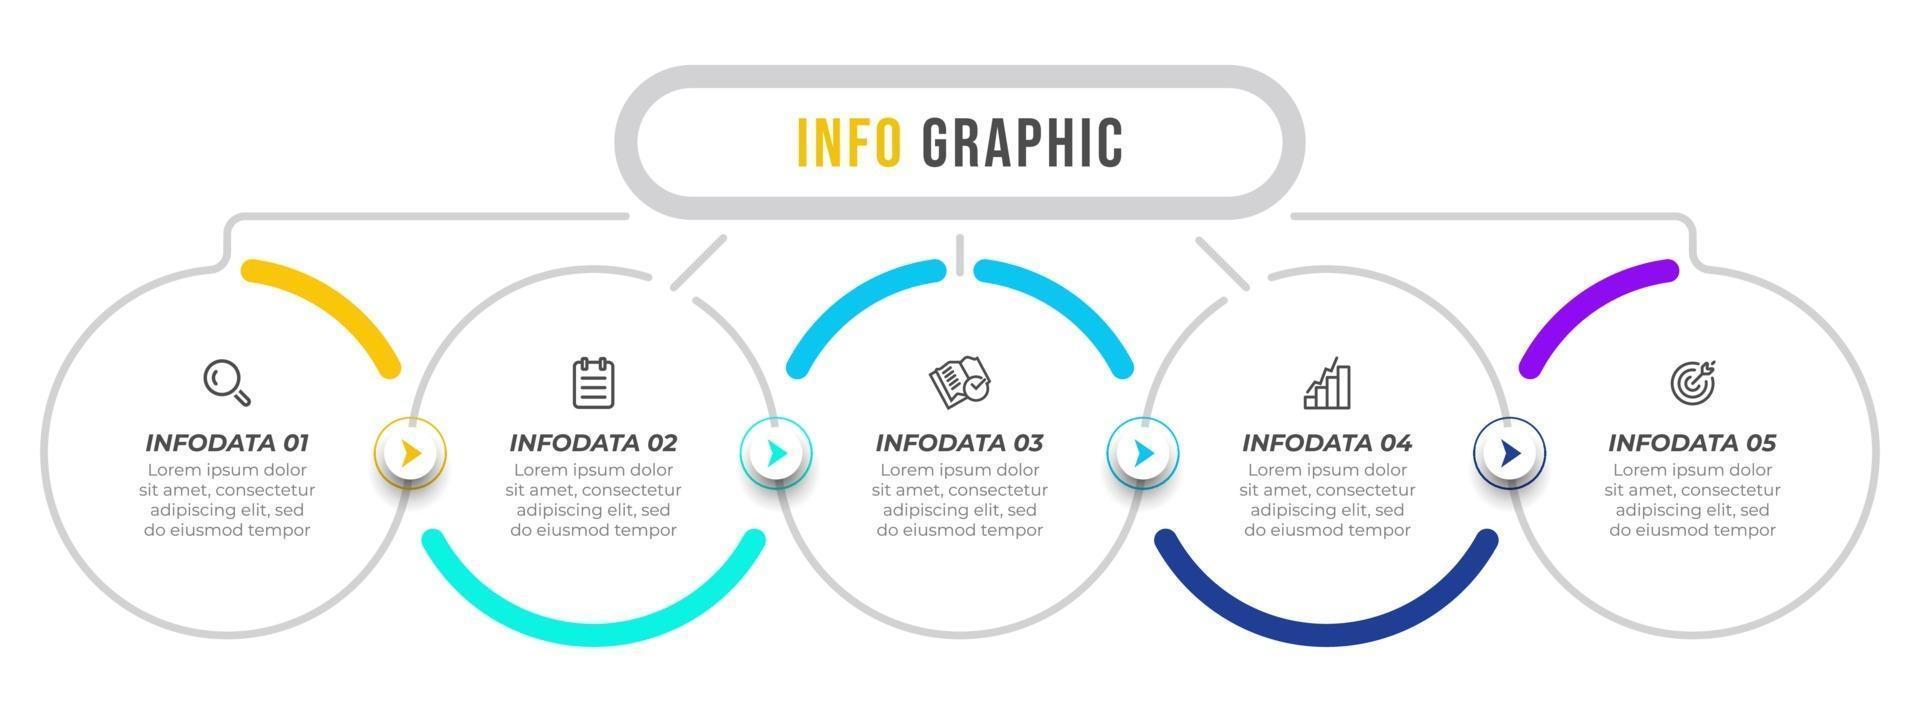 Infografik Vektor Design Vorlage mit Pfeilen und Symbolen. Geschäftskonzept mit 5 Optionen oder Schritten. kann für Präsentationen, Geschäftsbericht, Infotabelle verwendet werden.